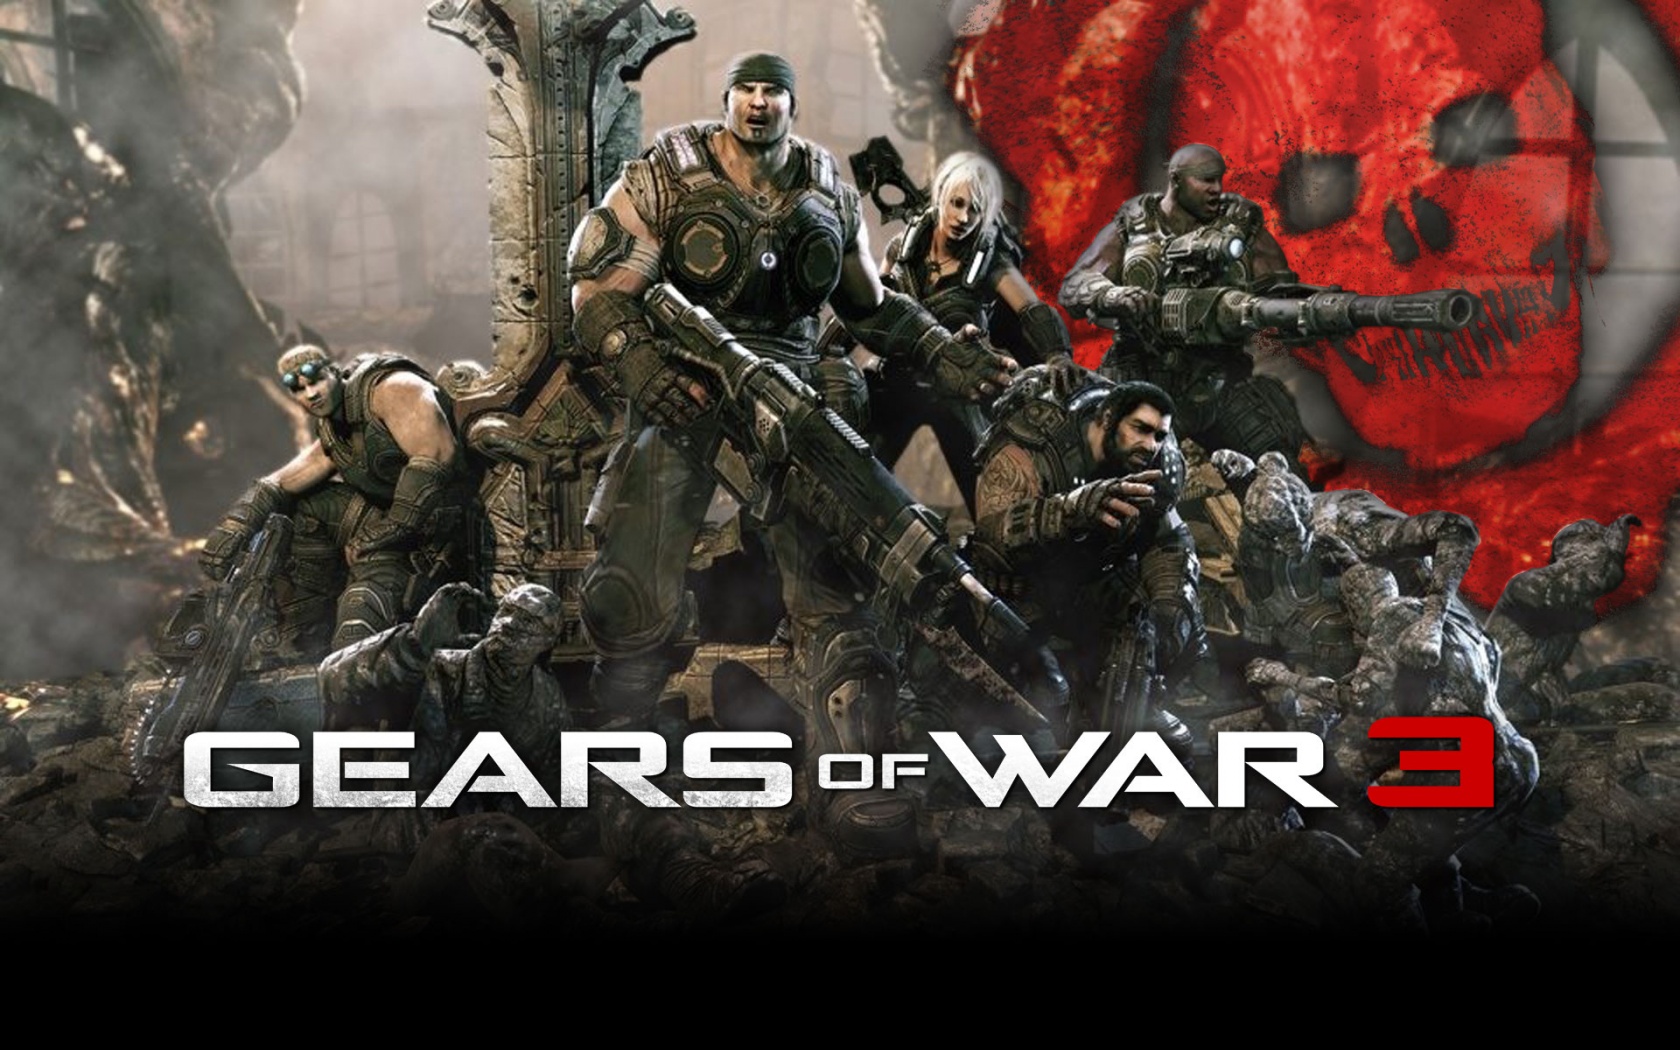 Gears of War 3 Wallpaper Full HD 1080p Wallpaper HD Widescreen